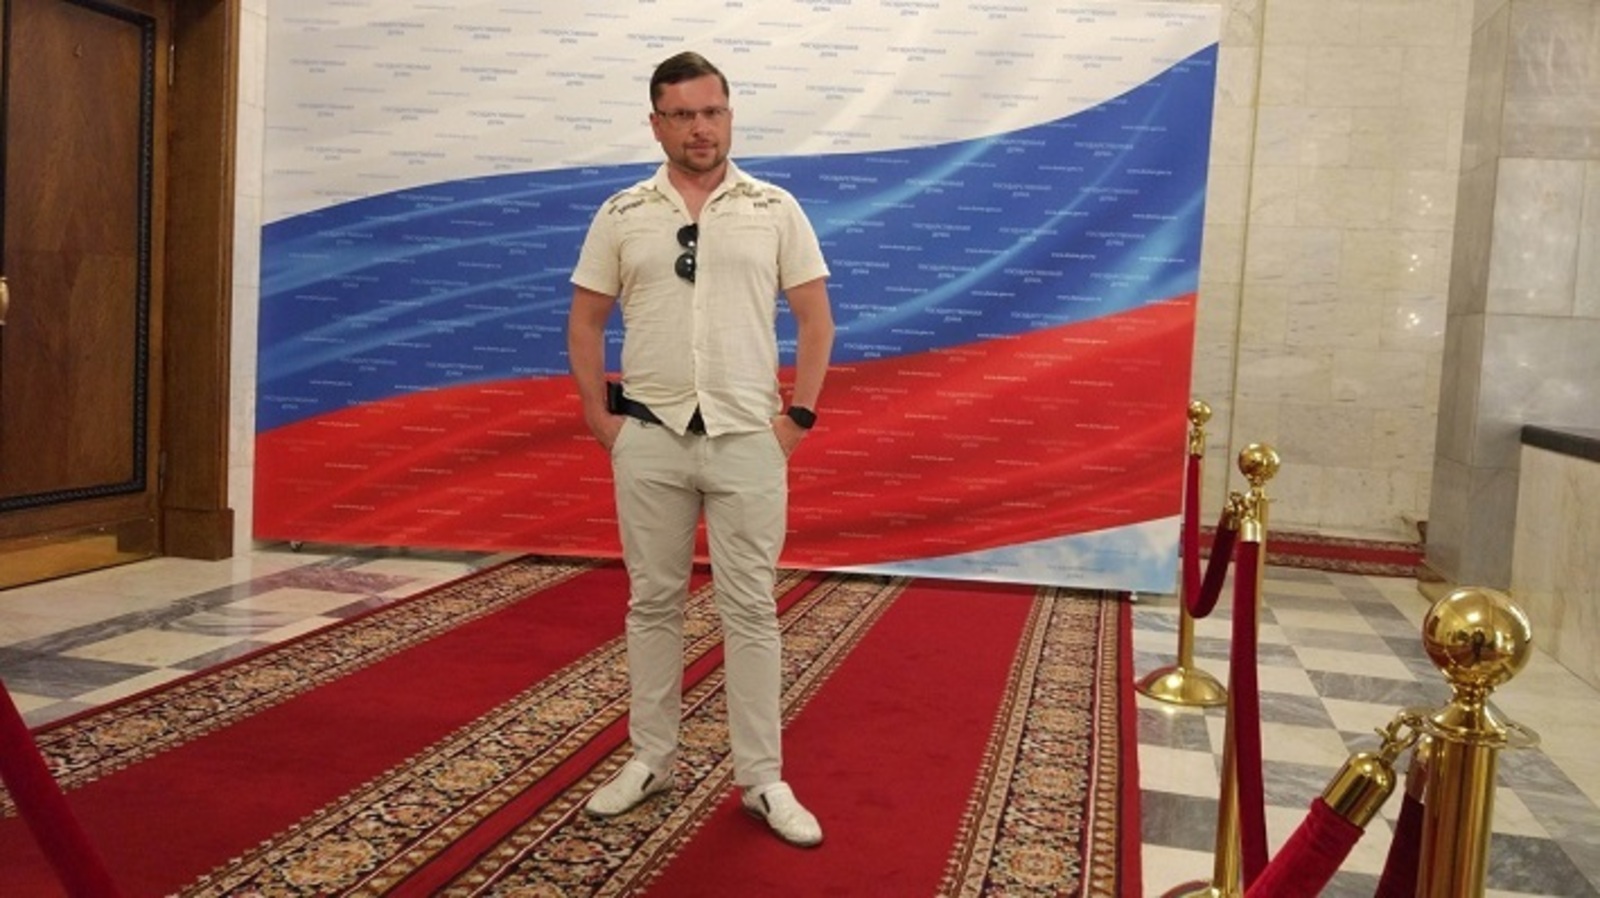 Андрей Иванов: “Единая Россия” на выборах показала хорошие результаты